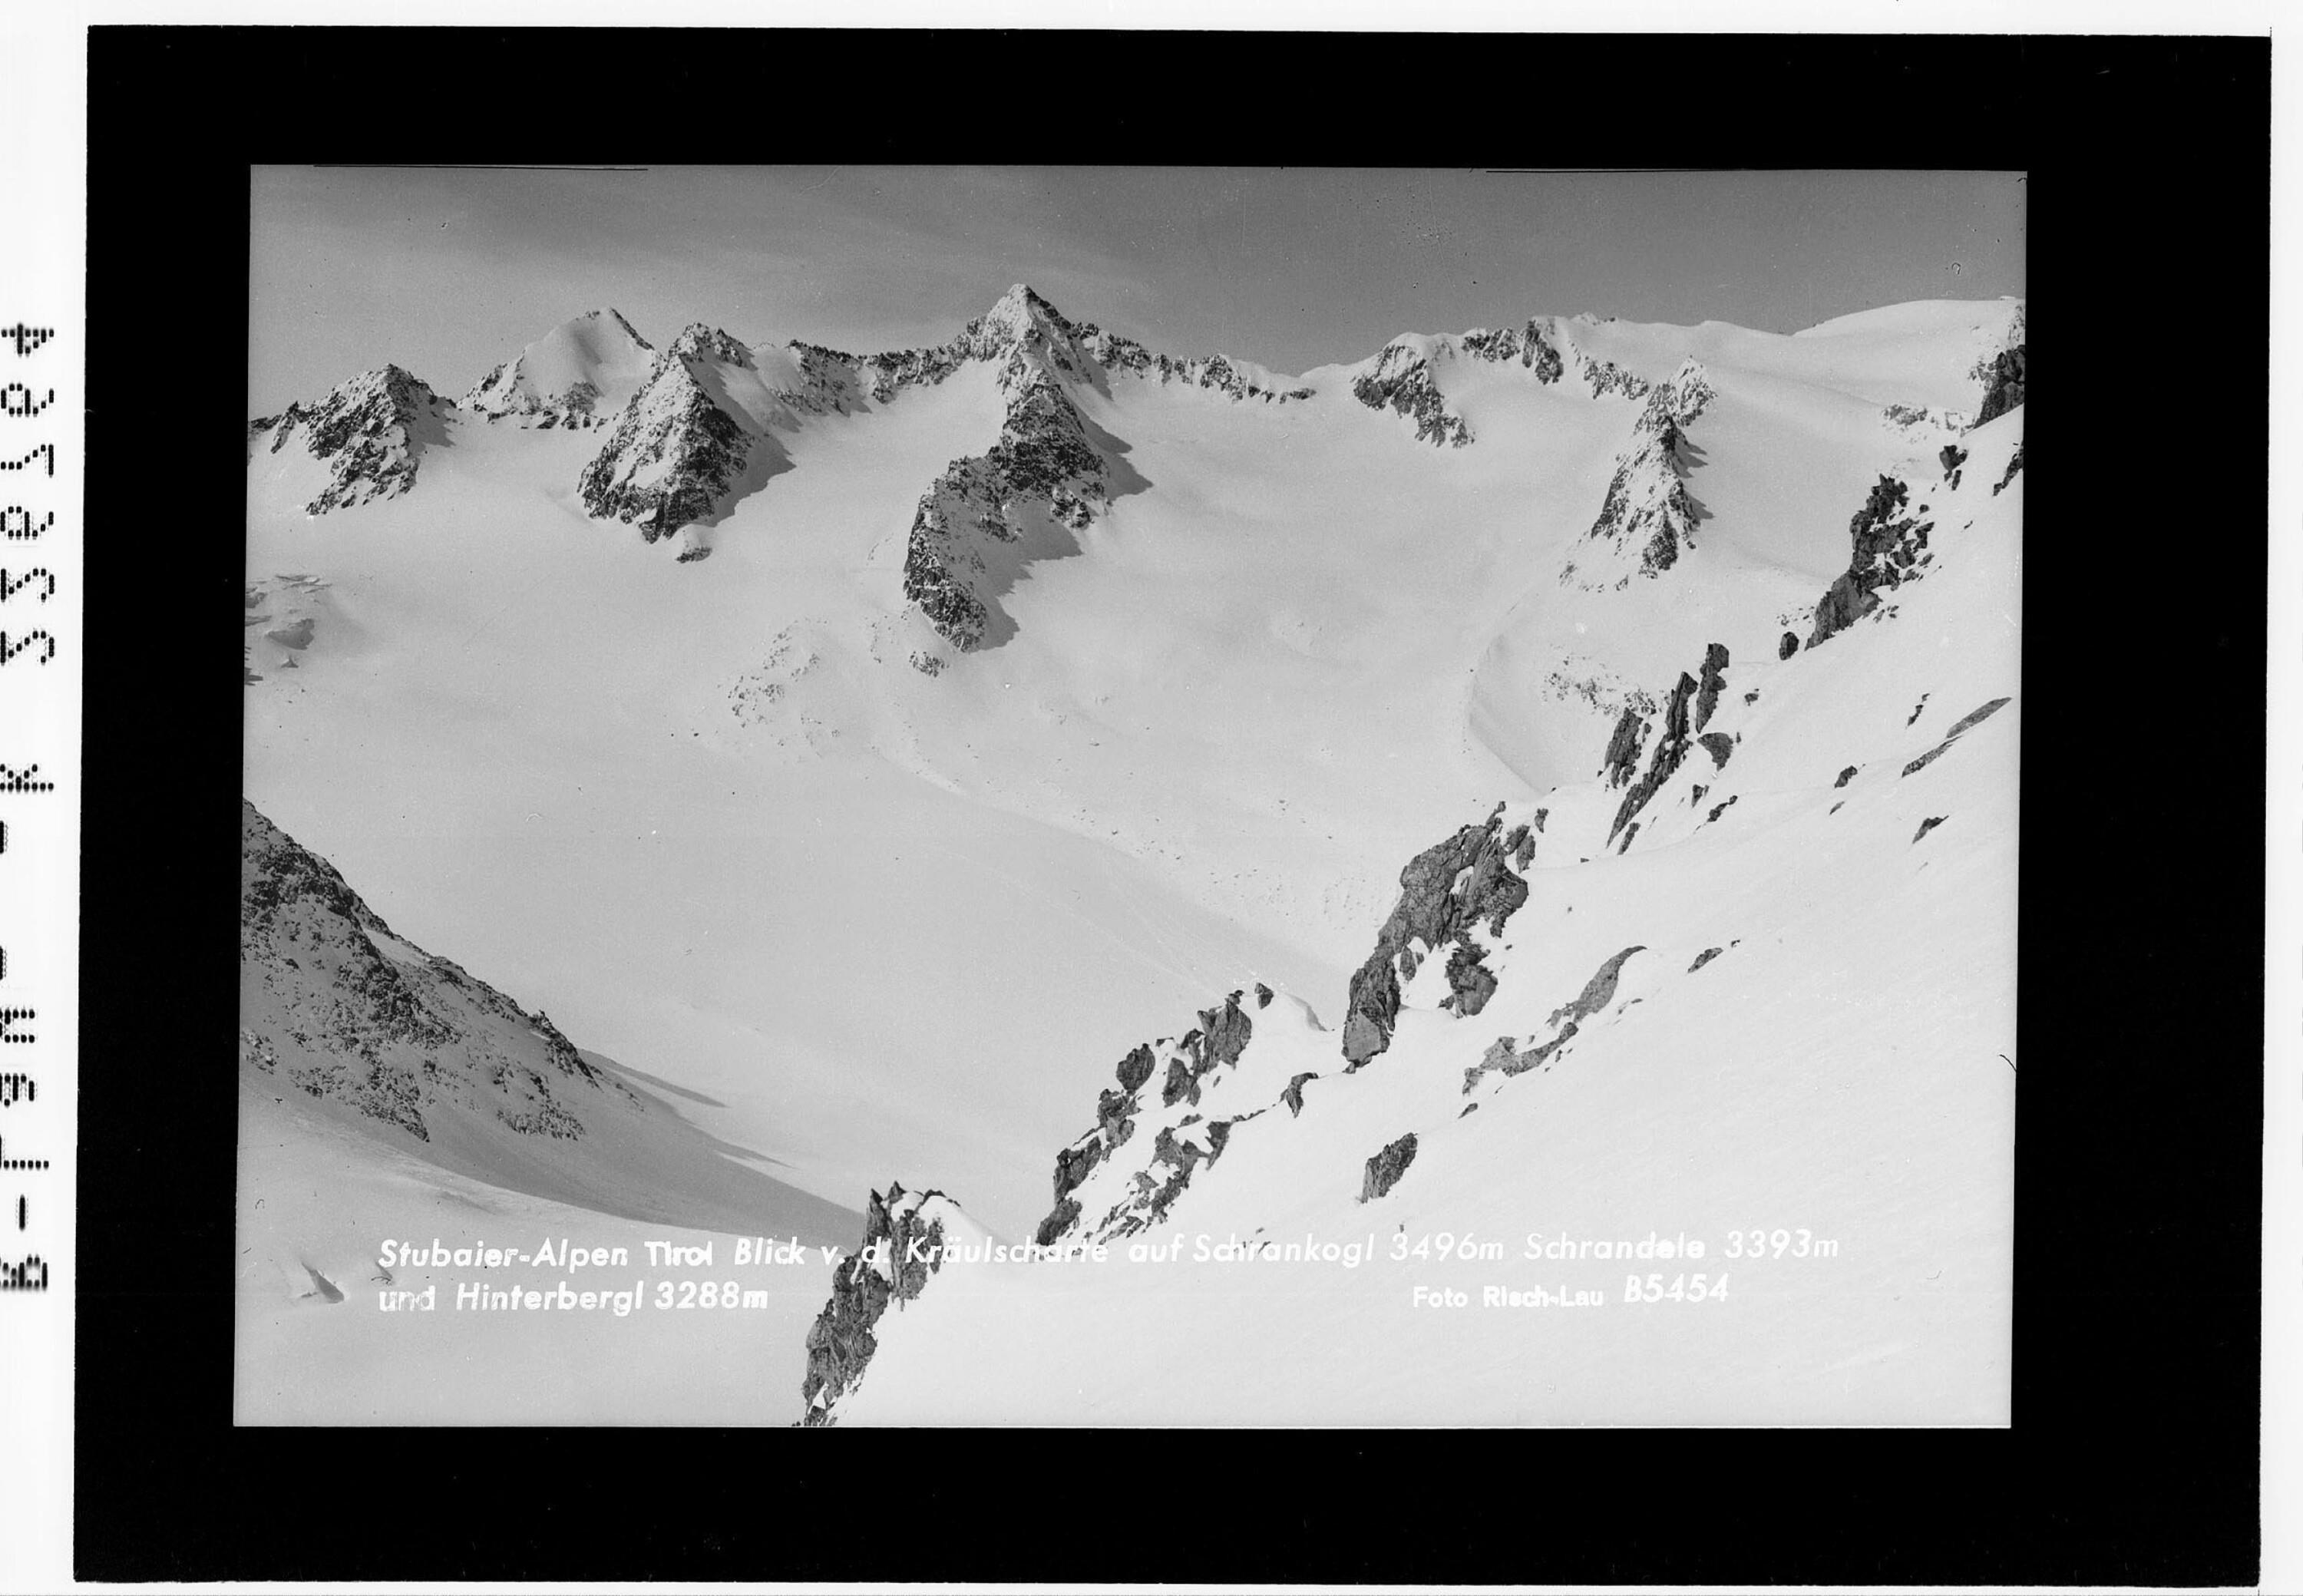 Stubaier Alpen / Tirol / Blick von der Kräulscharte auf Schrankogel 3496 m - Schrandele 3393 m und Hinterbergl 3288 m></div>


    <hr>
    <div class=